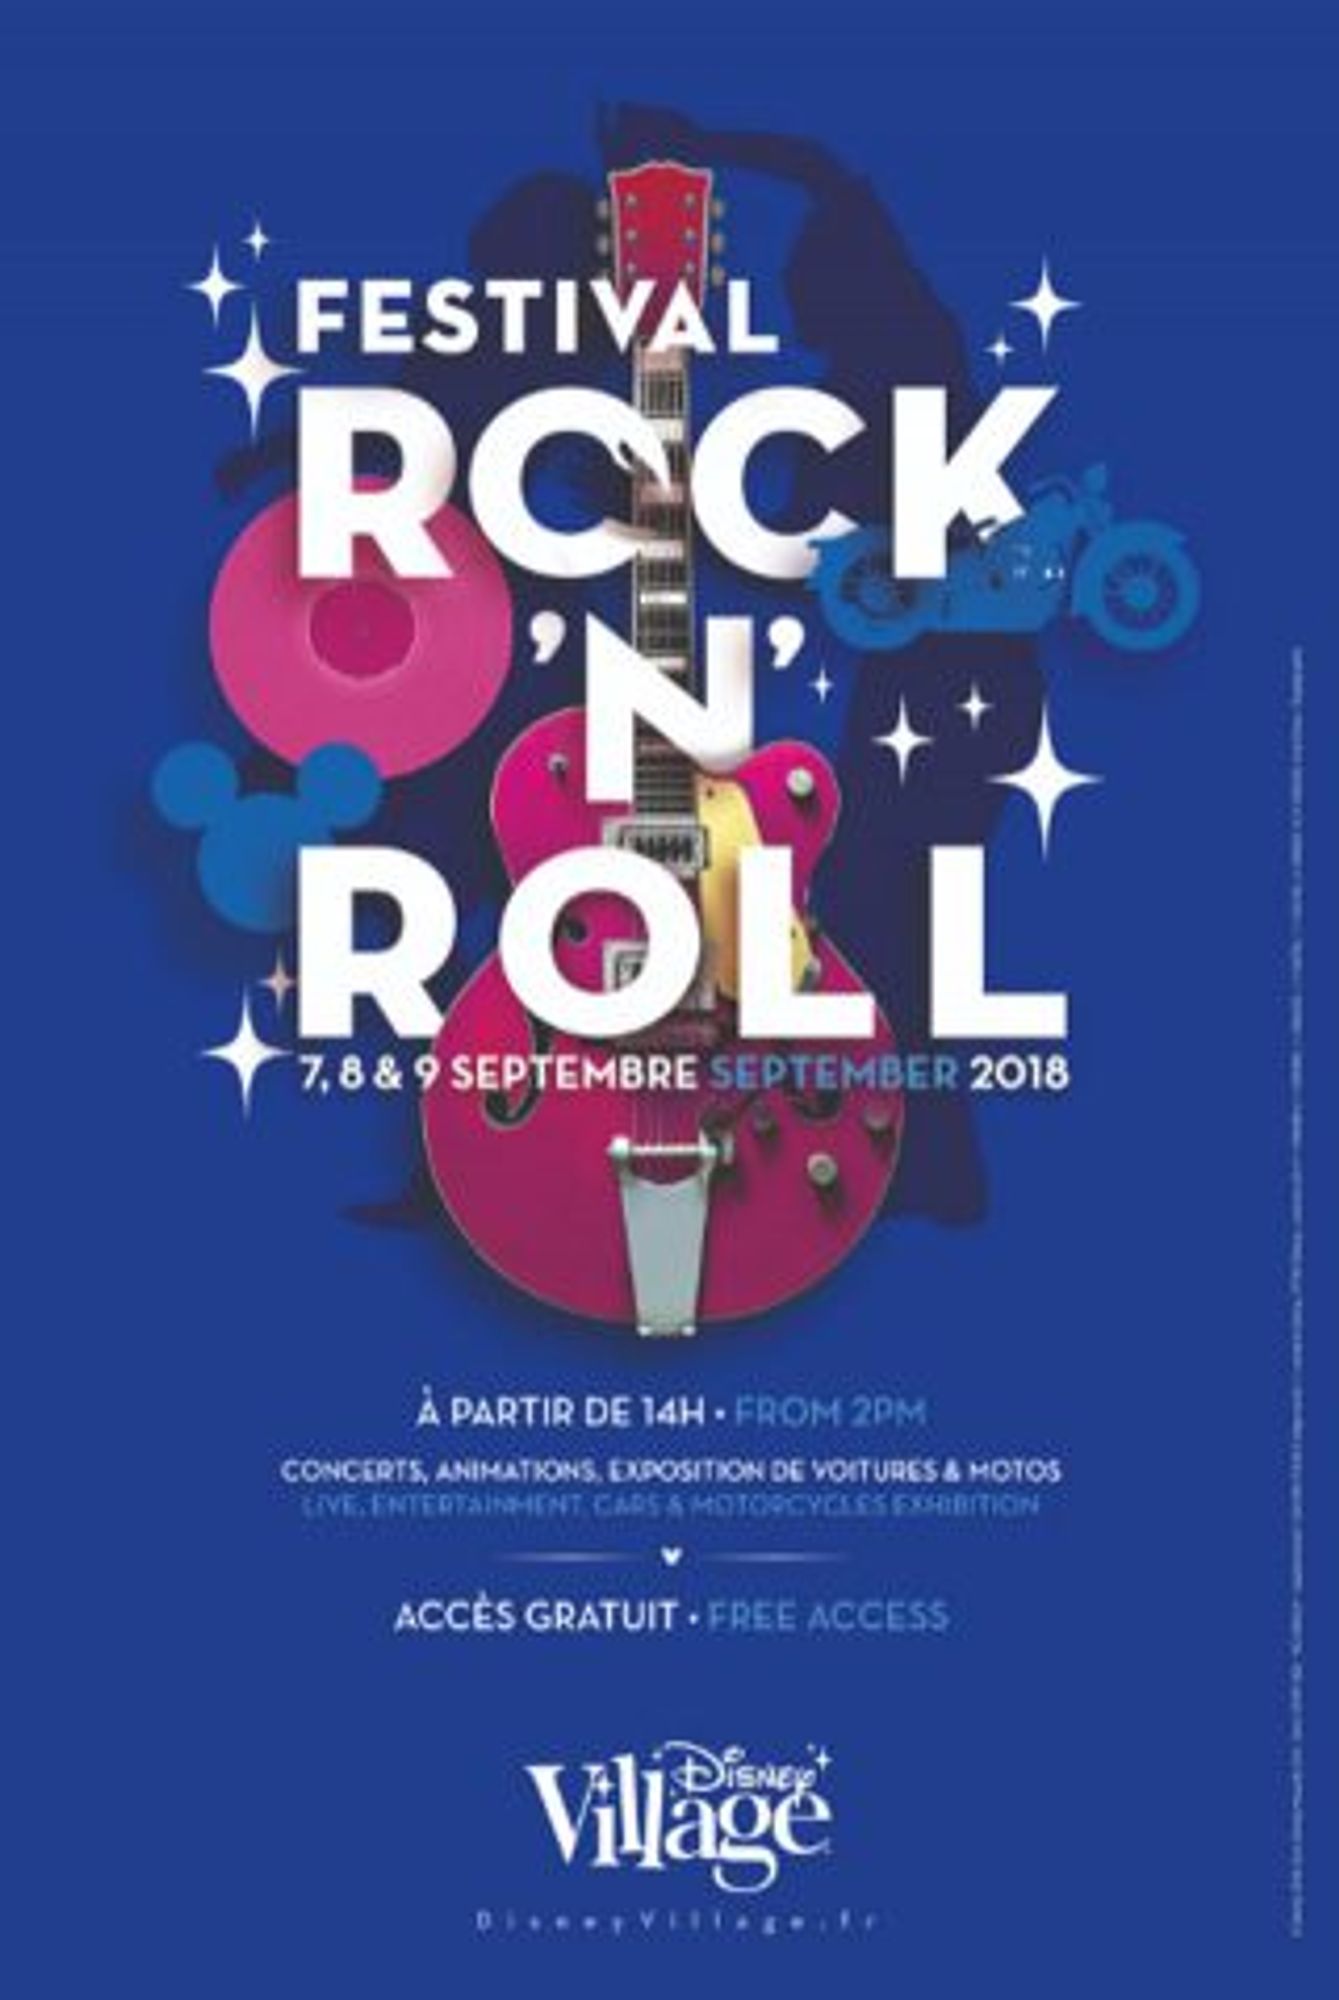 Participez au Festival "Rock'n'Roll" de Disney Village avec OUI FM